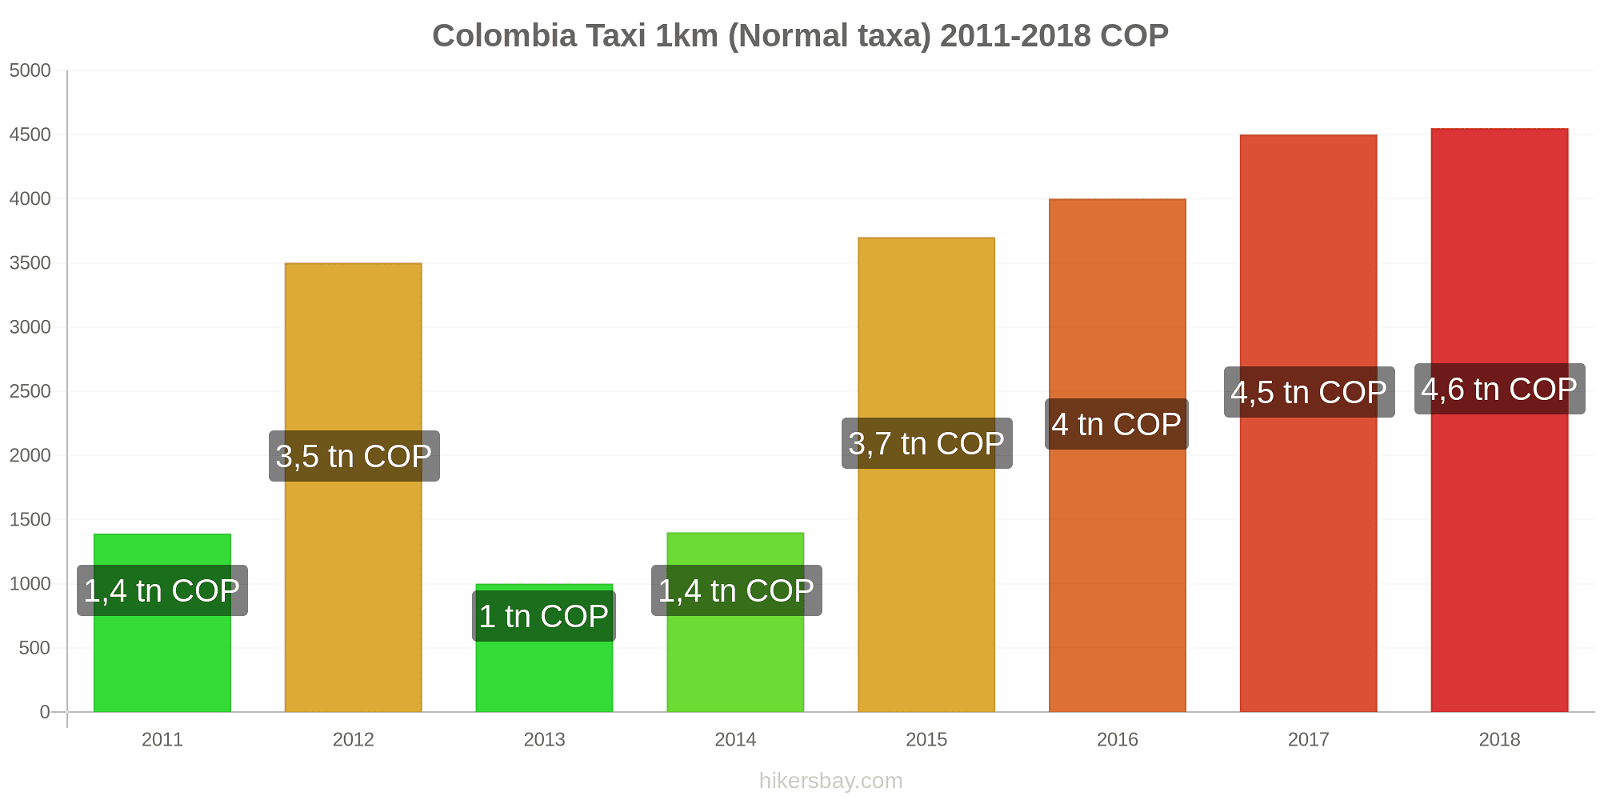 Colombia prisändringar Taxi 1km (Normal taxa) hikersbay.com